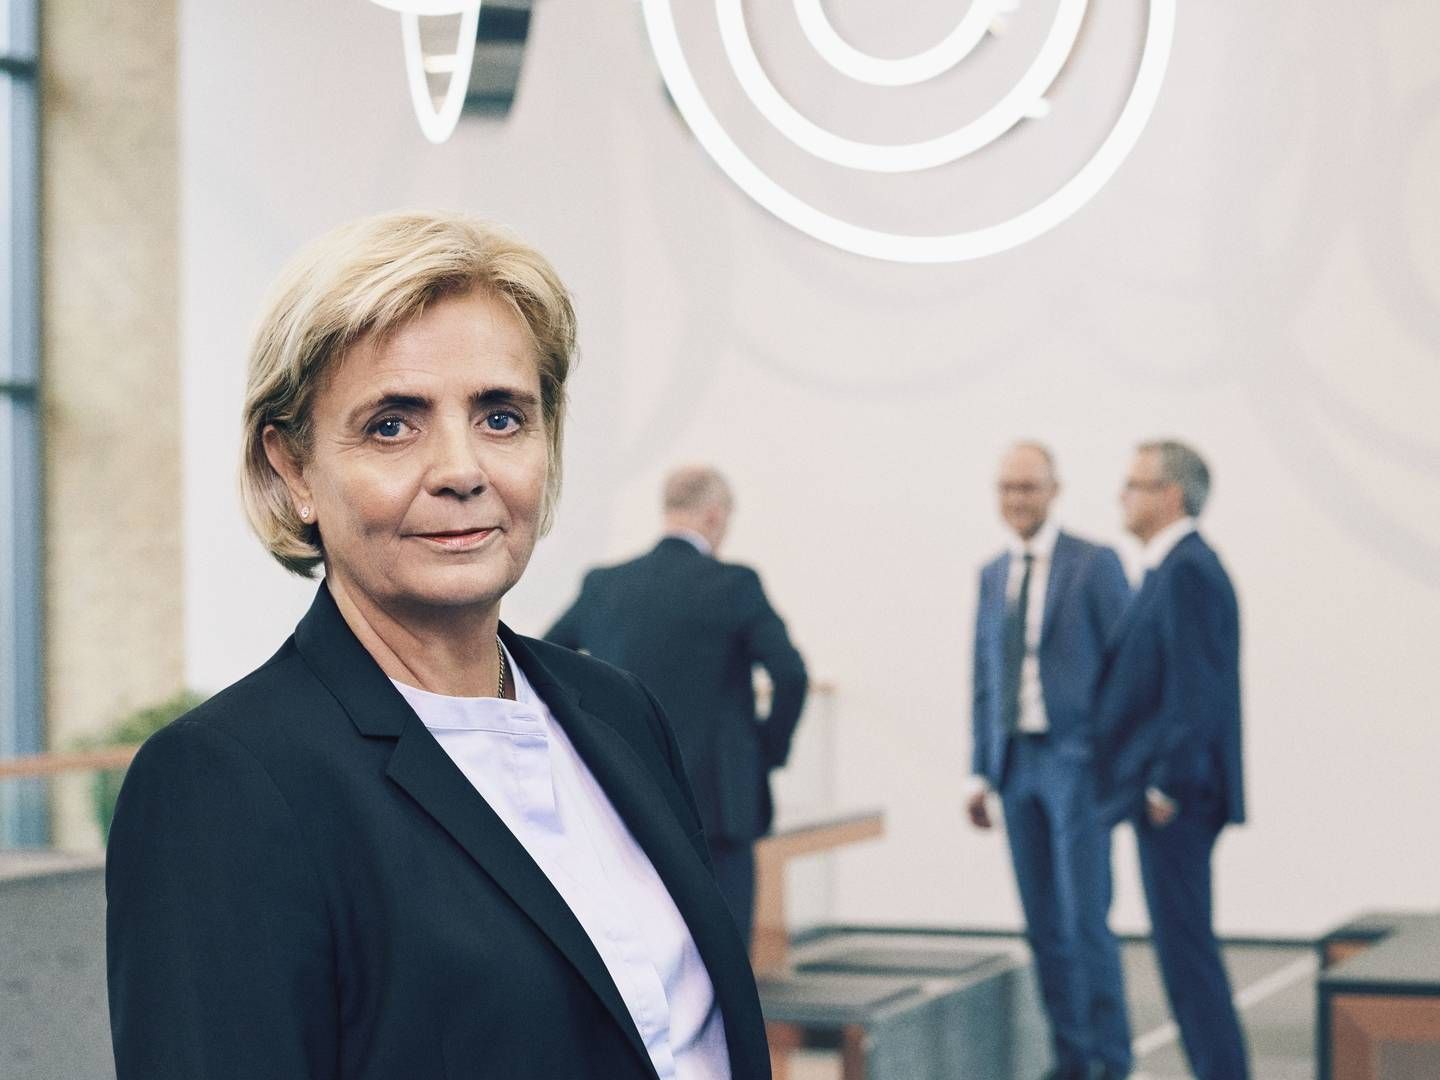 Adm. direktør Karen Frøsig vil se banken levere på sine 2024-mål på omkostninger og afkast i en længere periode, før hun vil sætte flueben ved målene. | Foto: PR / Sydbank